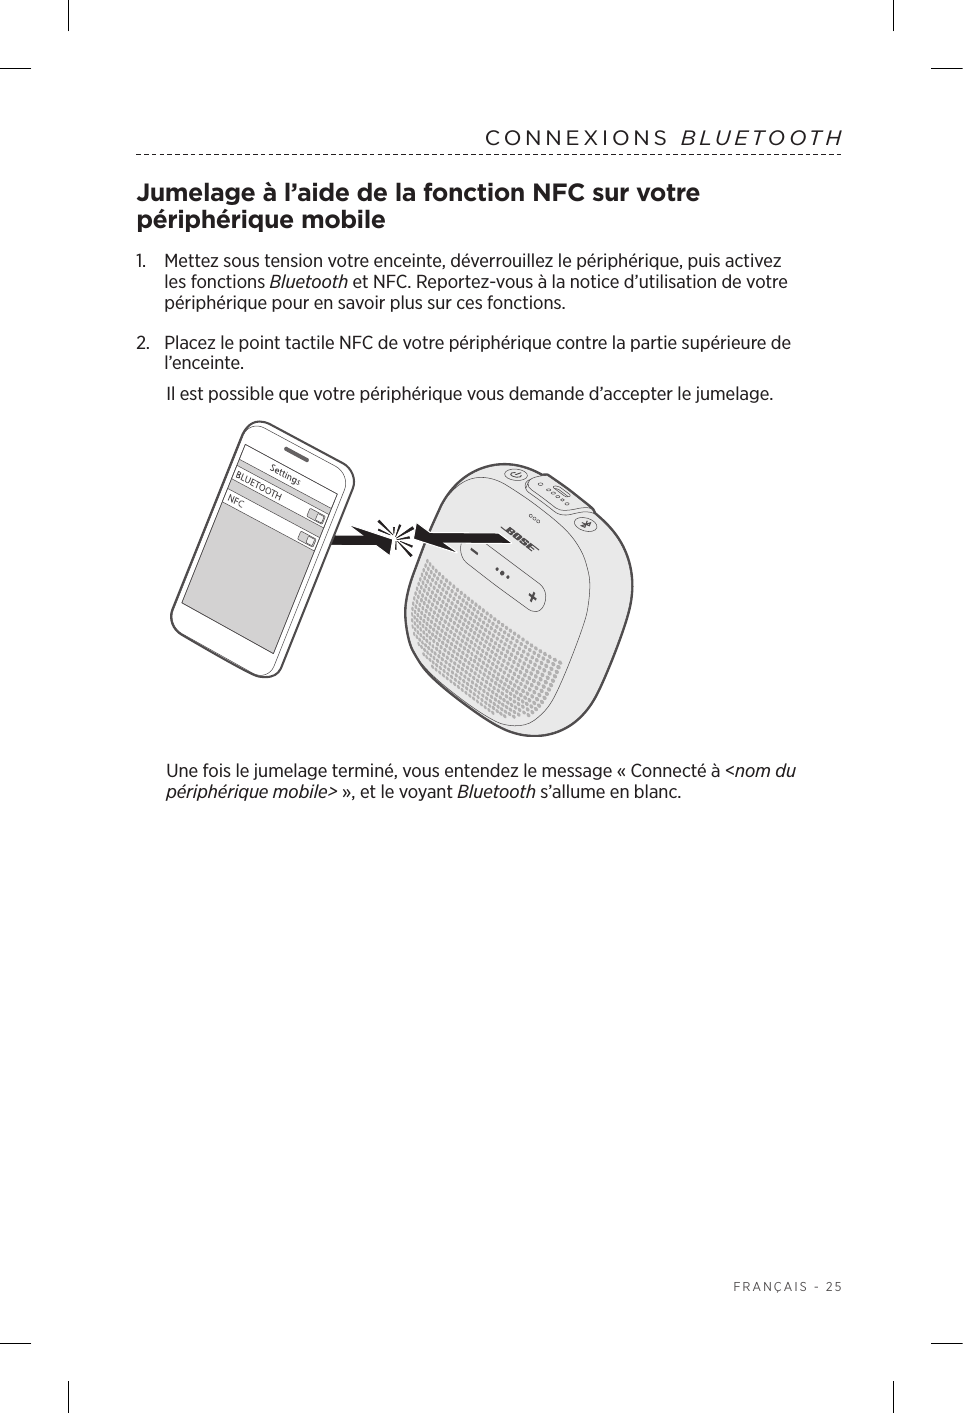  FRANÇAIS - 25CONNEXIONS  BLUETOOTHJumelage à l’aide de la fonction NFC sur votre périphérique mobile1.    Mettez sous tension votre enceinte, déverrouillez le périphérique, puis activez les fonctions Bluetooth et NFC. Reportez-vous à la notice d’utilisation de votre périphérique pour en savoir plus sur ces fonctions.2.  Placez le point tactile NFC de votre périphérique contre la partie supérieure de l’enceinte.Il est possible que votre périphérique vous demande d’accepter le jumelage.Une fois le jumelage terminé, vous entendez le message «Connecté à &lt;nom du périphérique mobile&gt;», et le voyant Bluetooth s’allume en blanc.